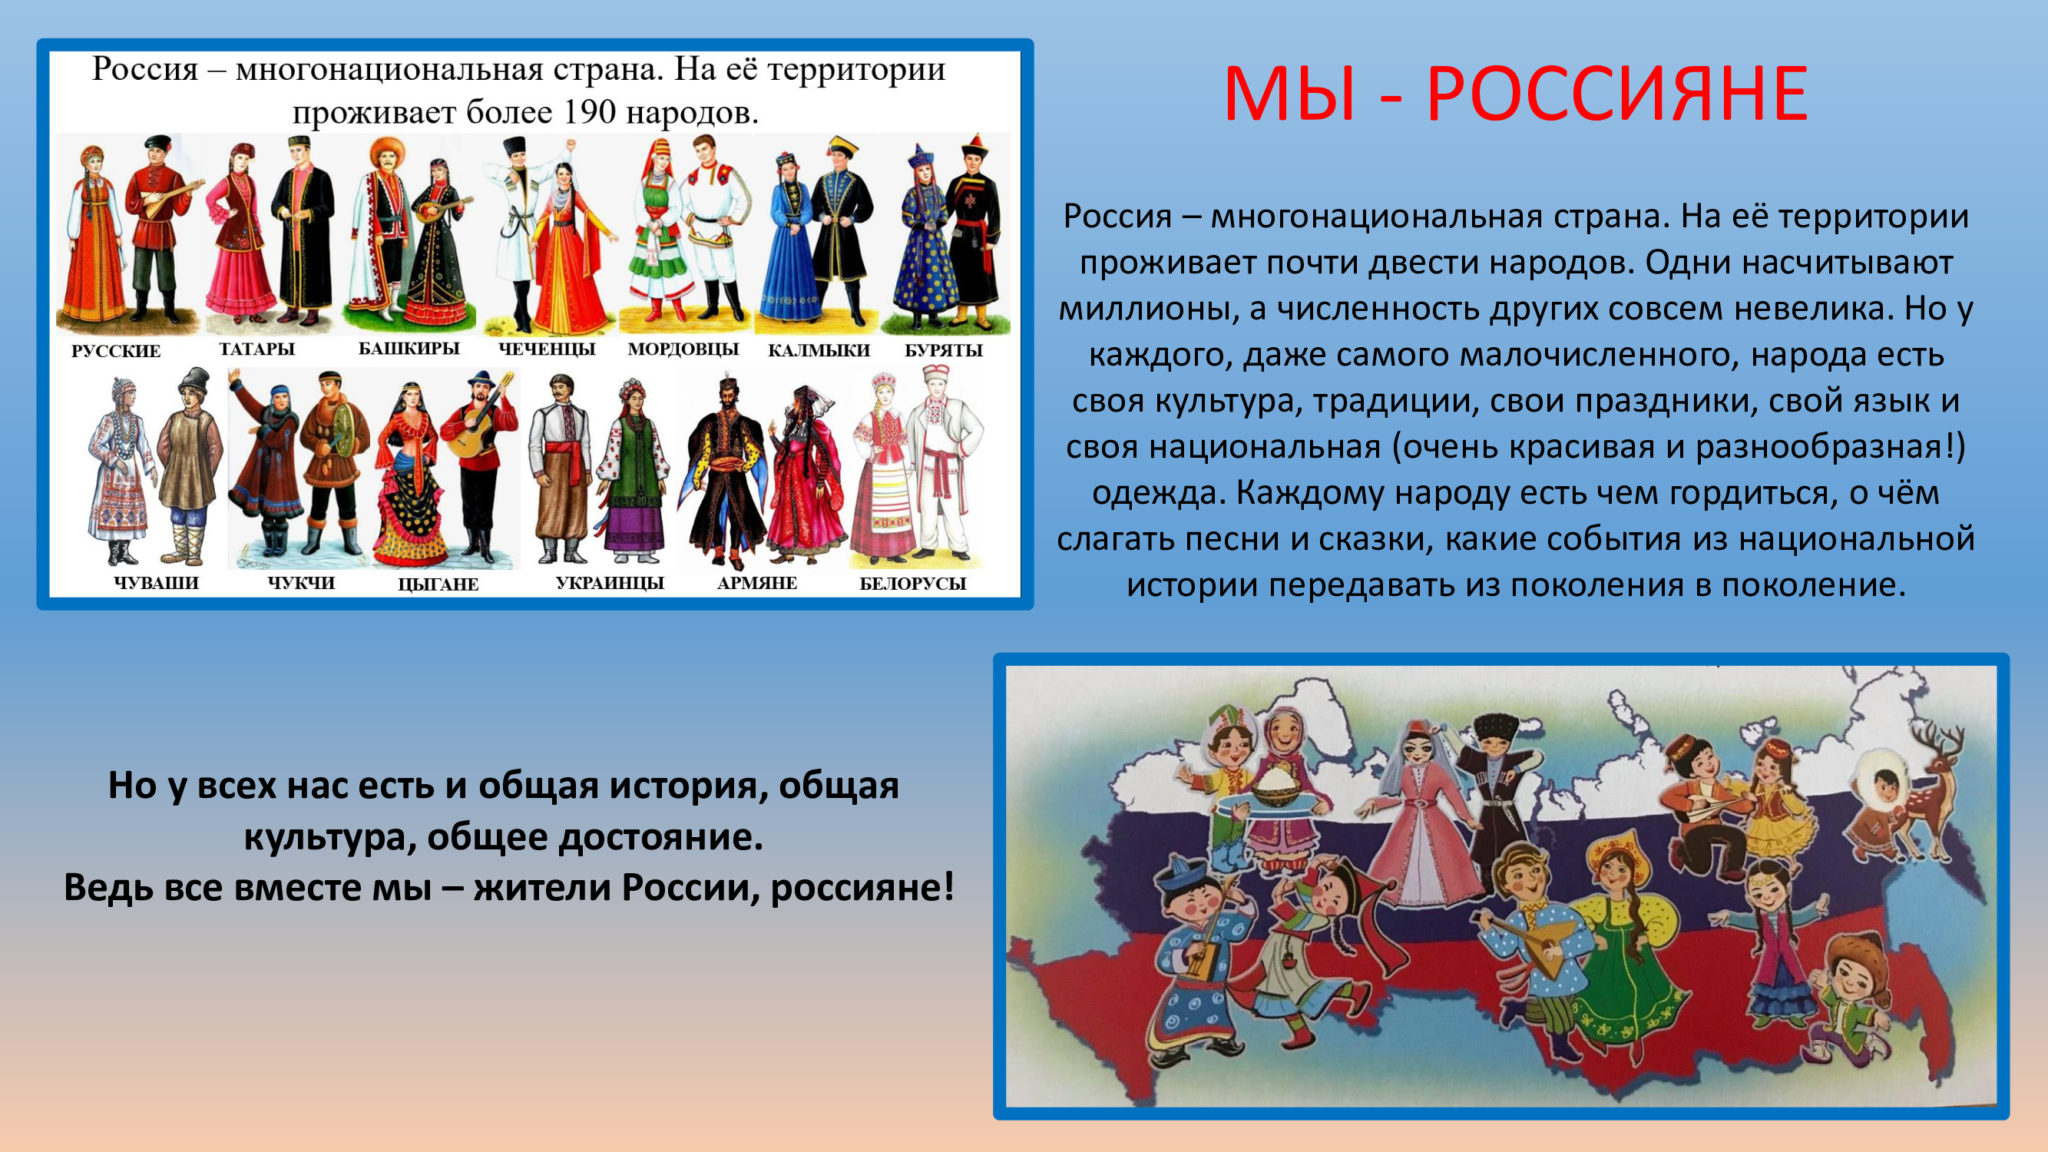 События общее достояние народов России